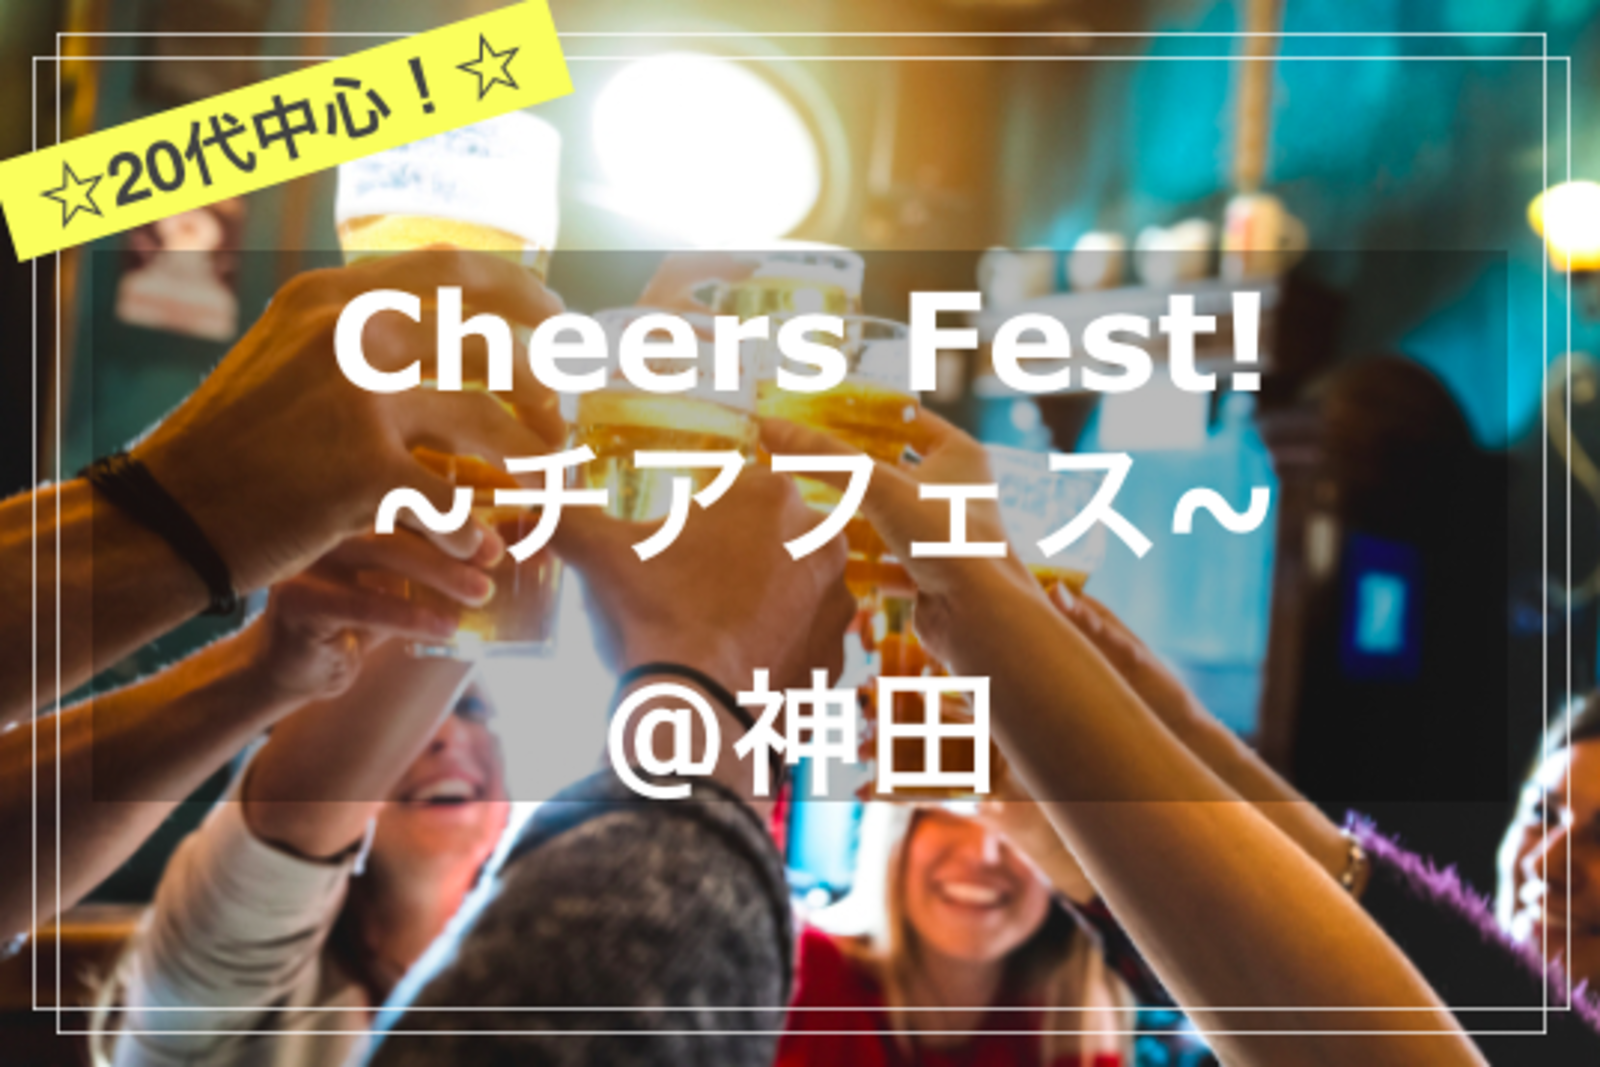 【20代中心✨】Cheers Fest!~チアフェス~🍻🥂✨~@神田